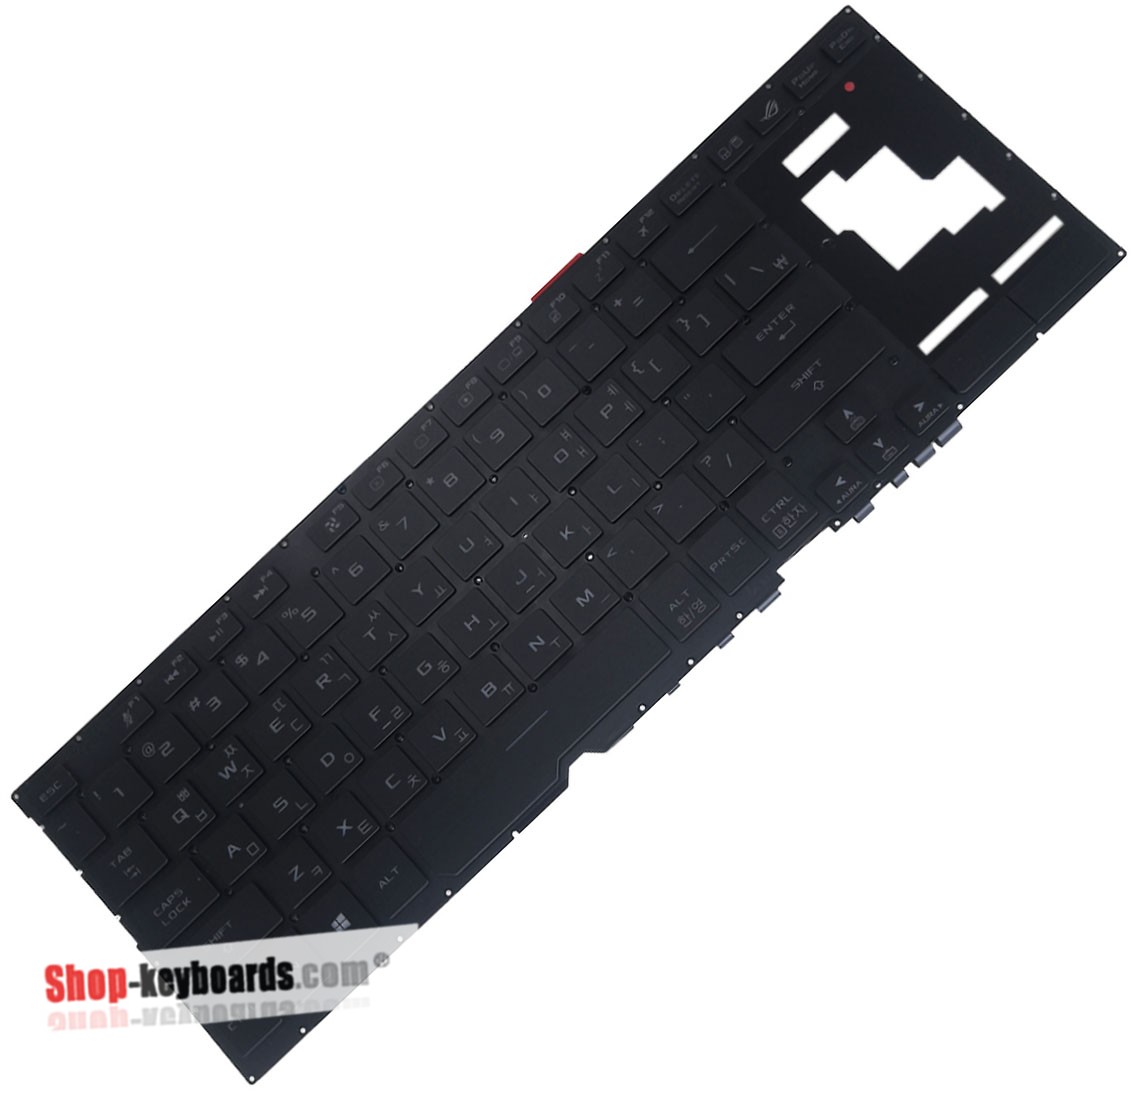 Asus GX701GW Keyboard replacement